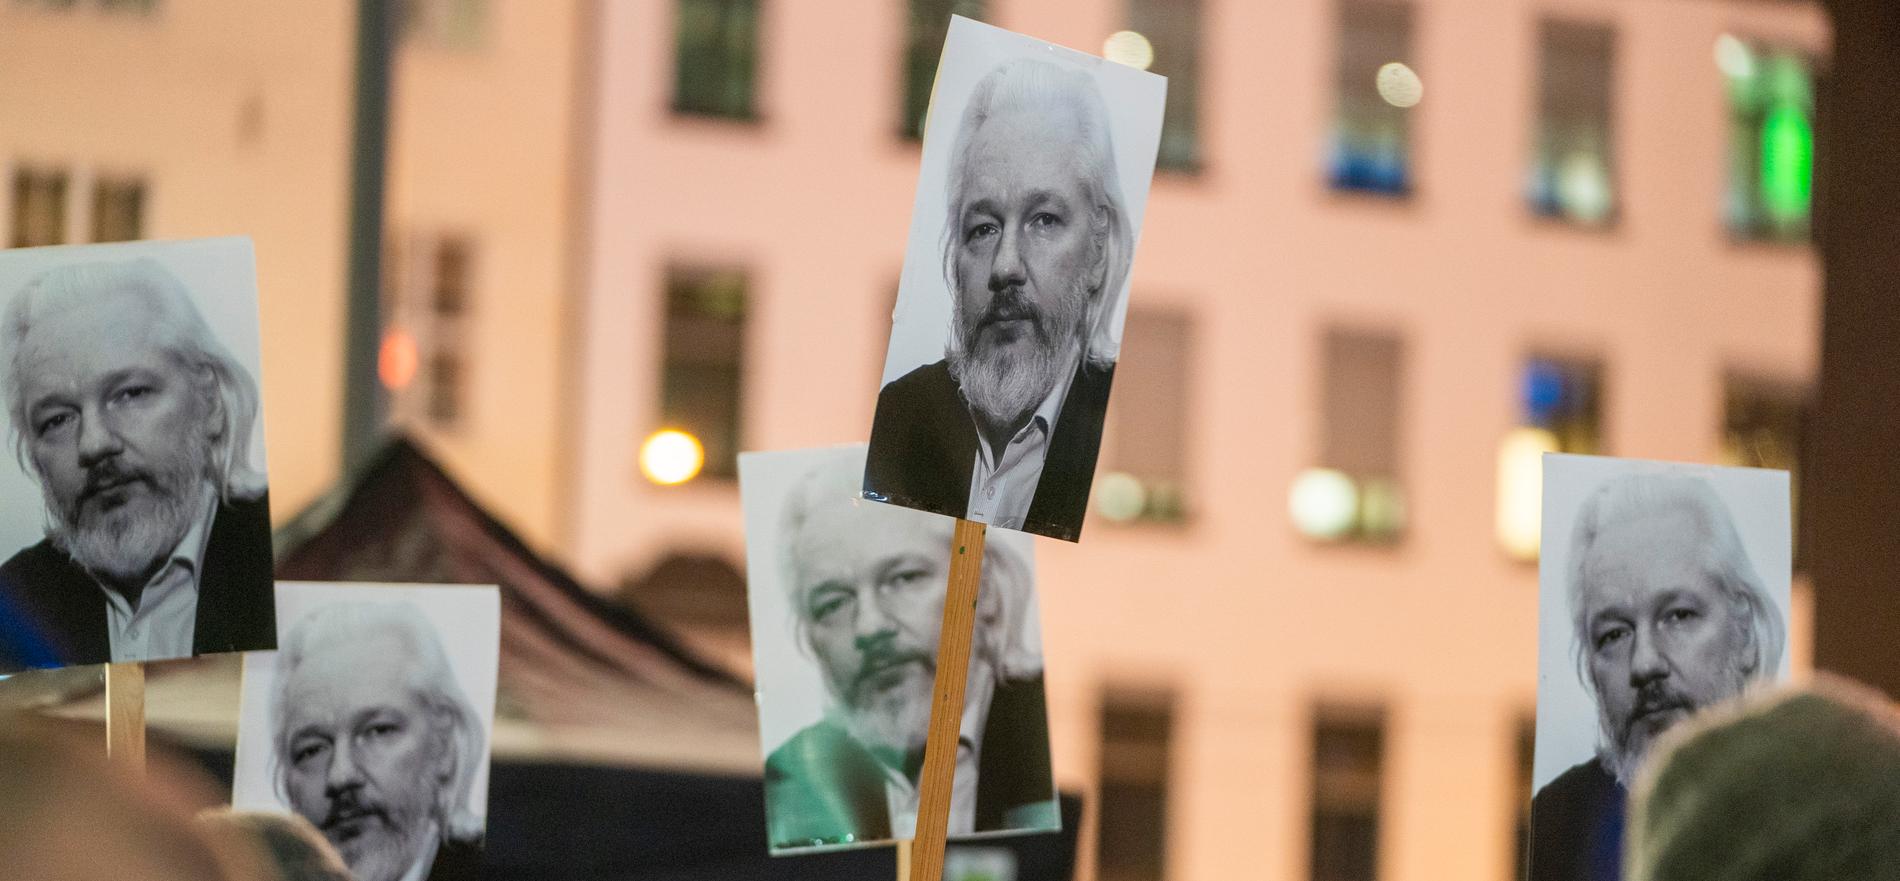 Plakater med Julian Assange under en lysmarkering i forbindelse med fredsprisen 2021. 